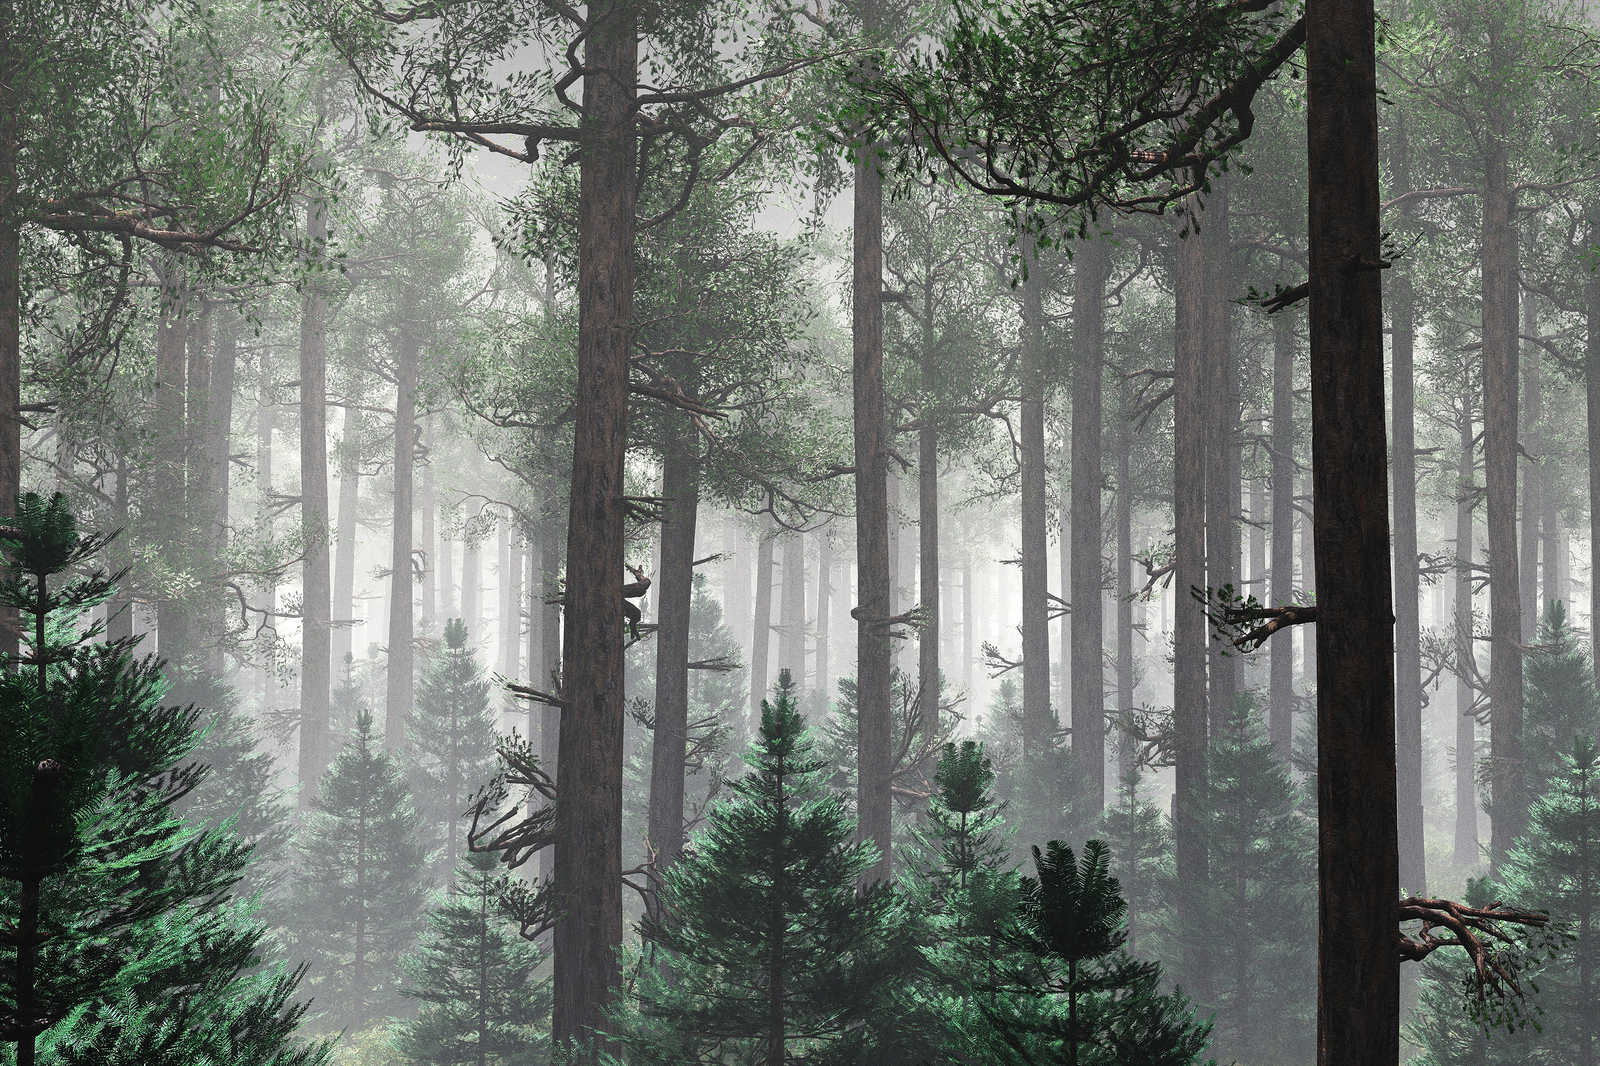             Leinwandbild Wald im Nebel mit großen Bäumen – 0,90 m x 0,60 m
        